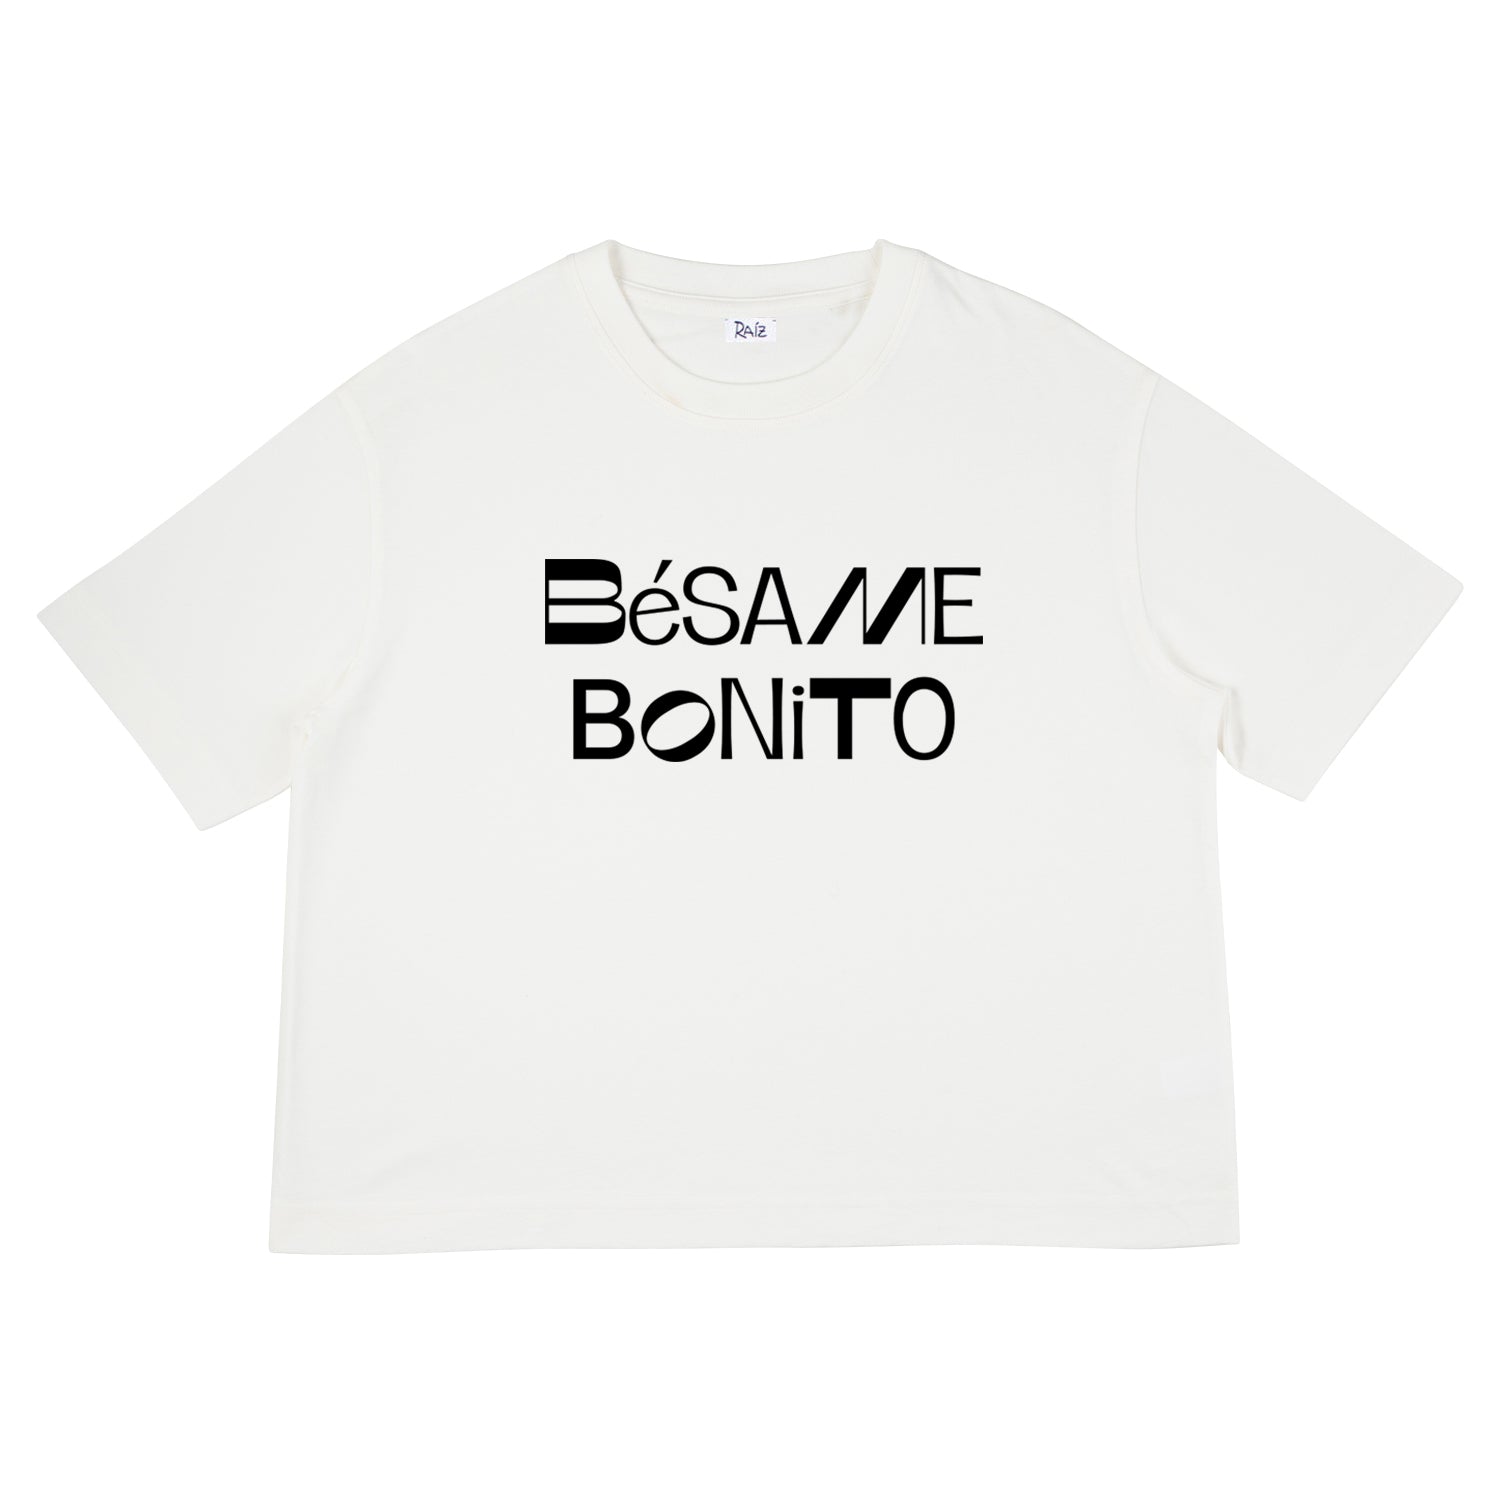 Besame Crop T-Shirt White